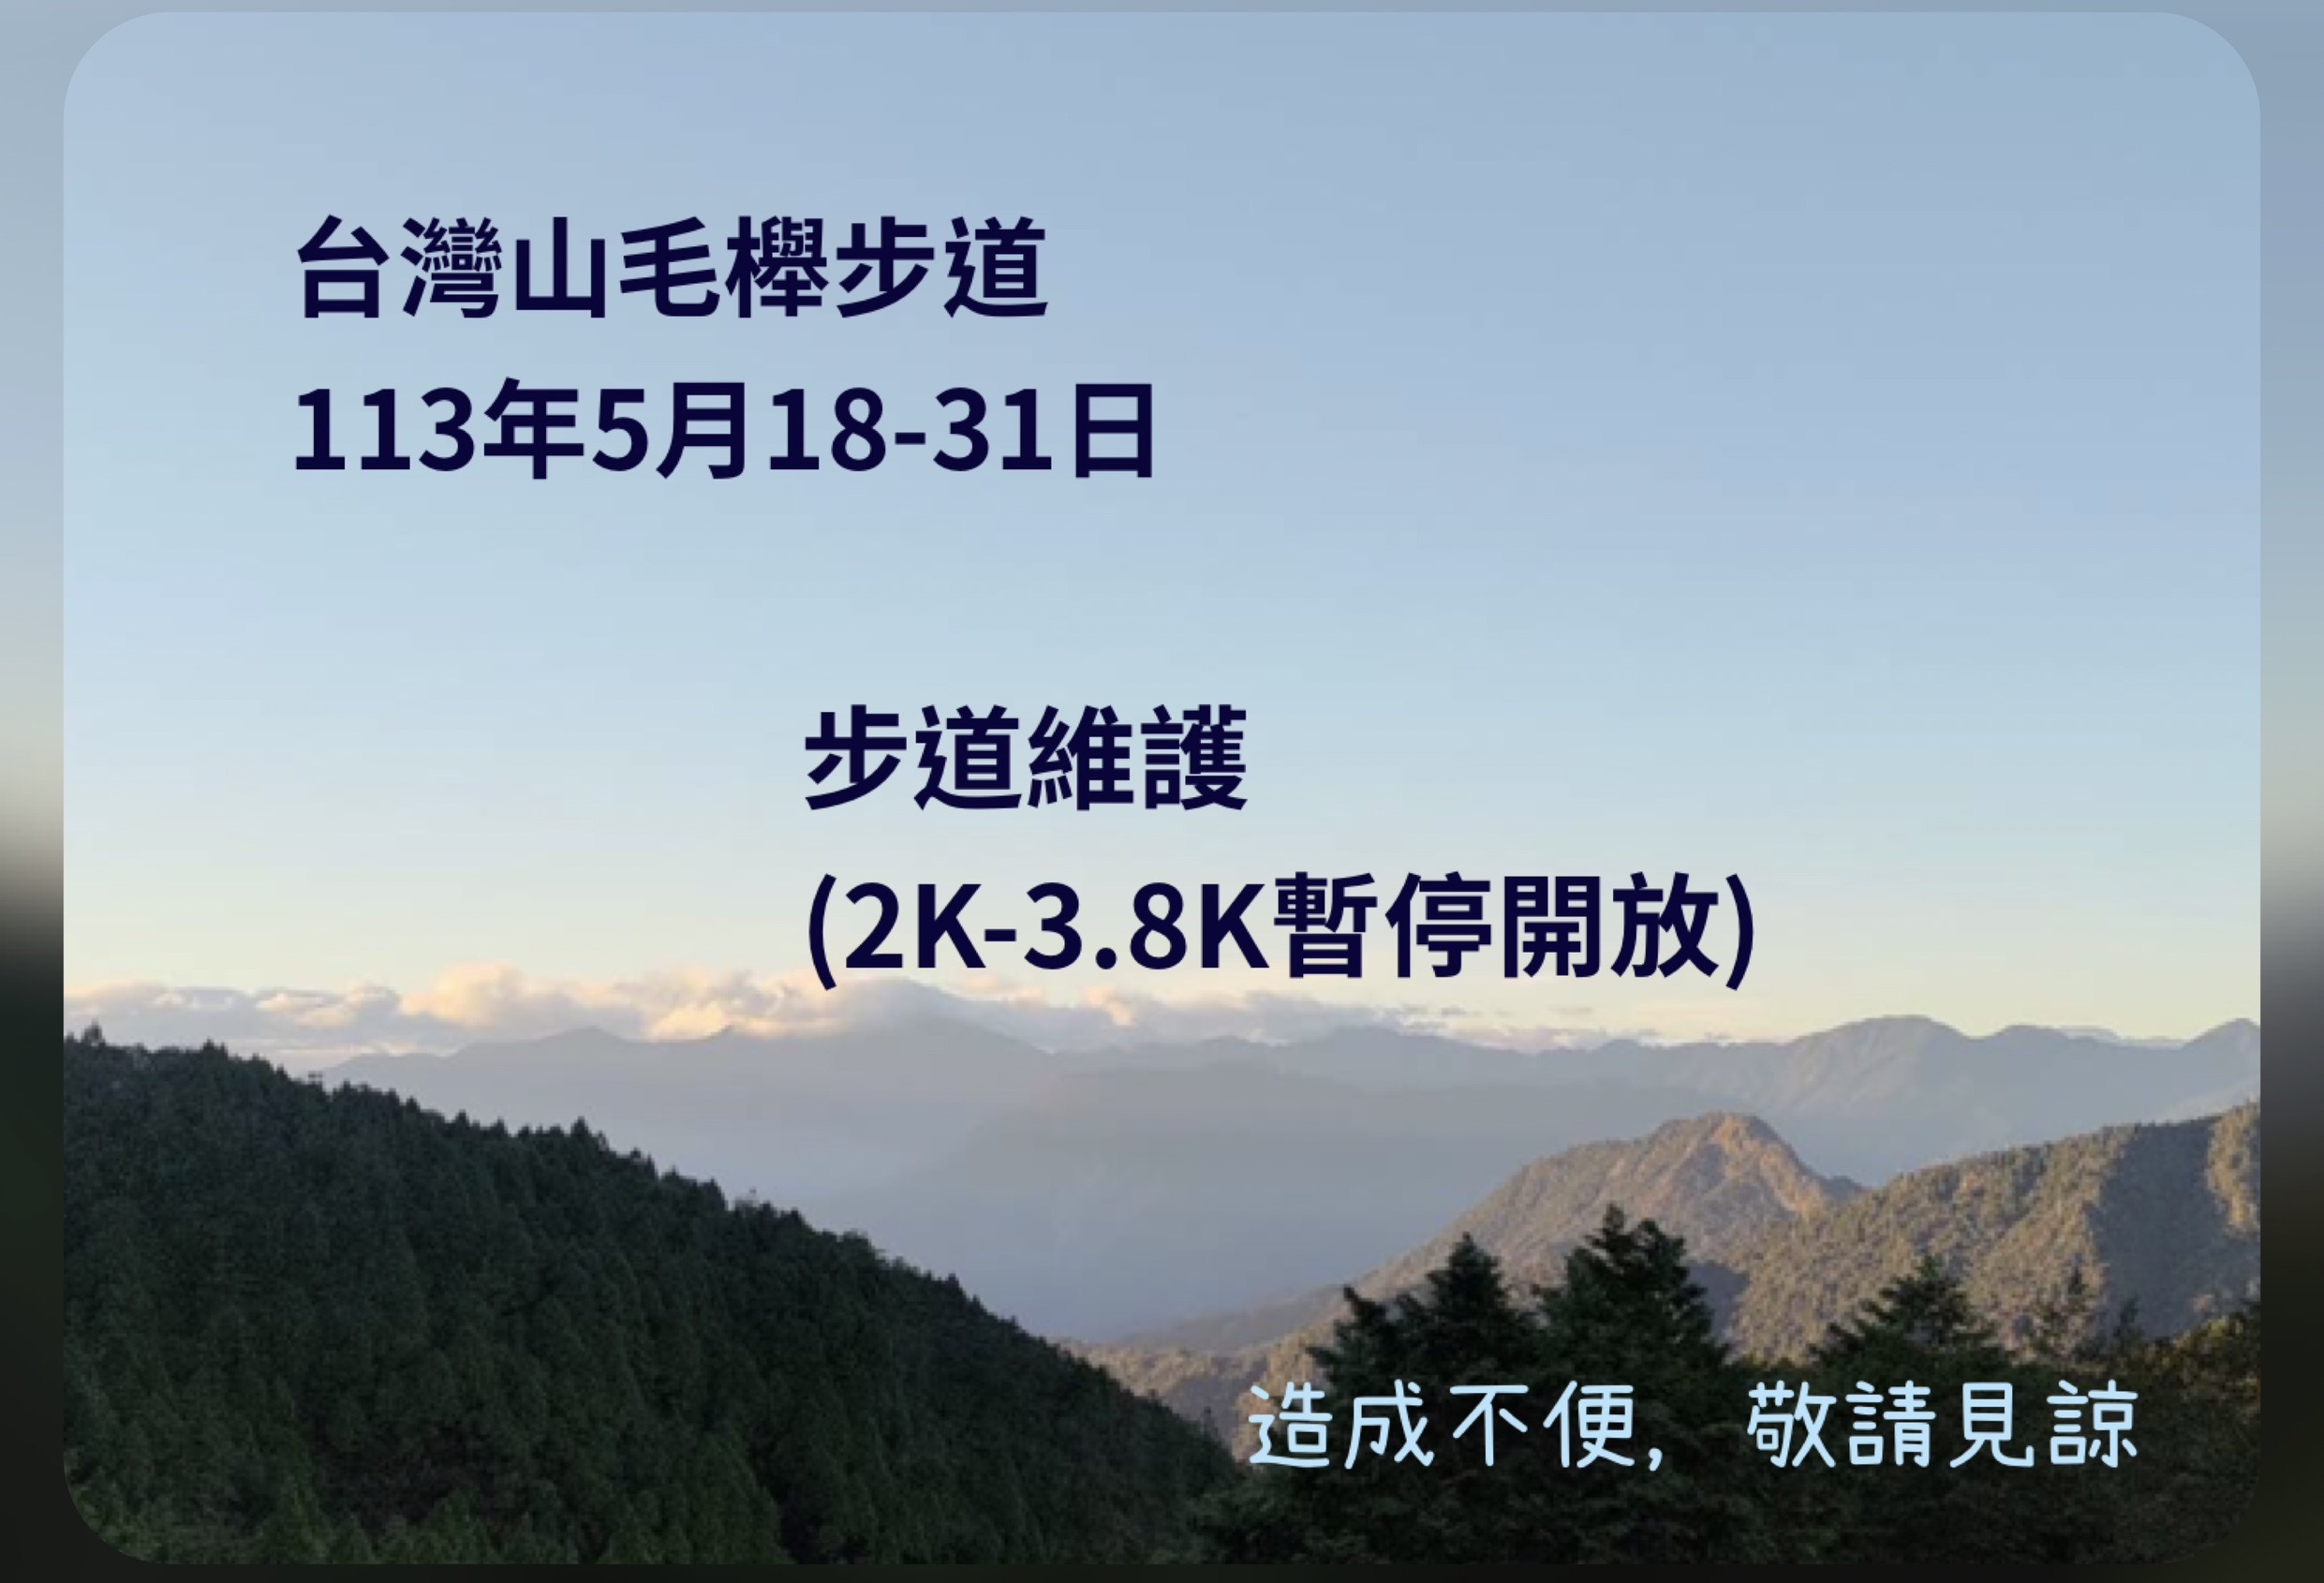 台灣山毛櫸步道113年5月18-31日起進行步道維護、2K-3.8K暫停開放